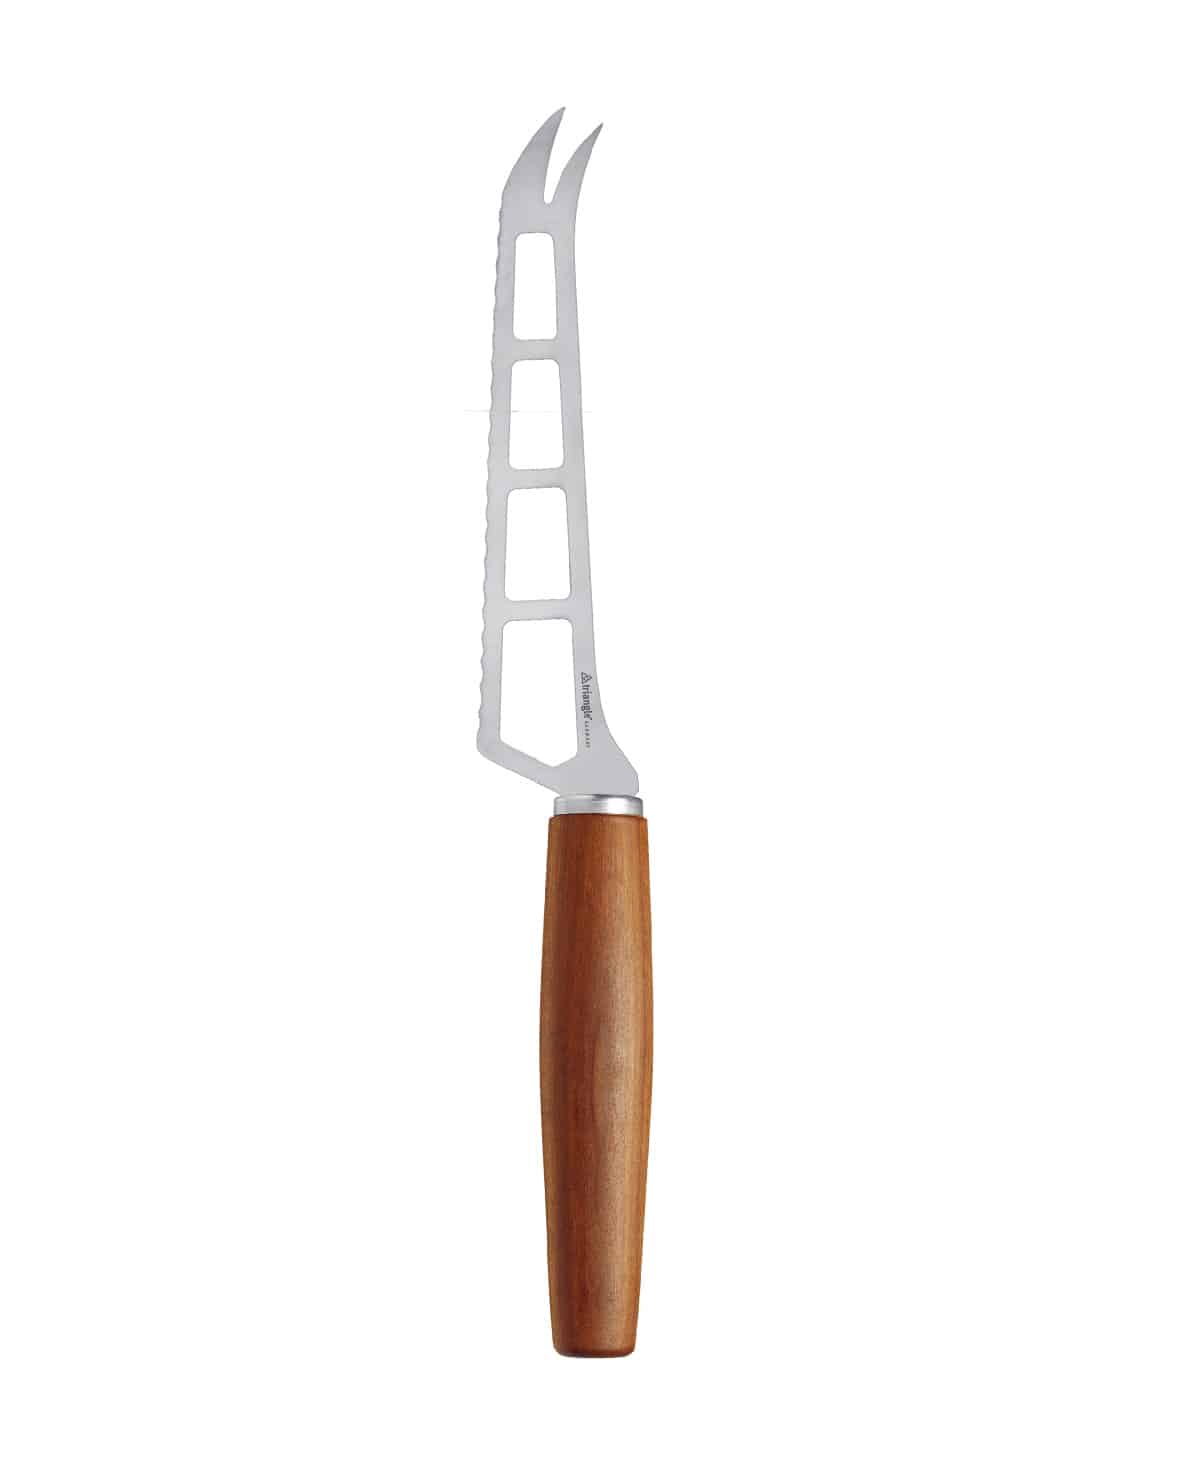 Cheese knife scythe, plum wood handle